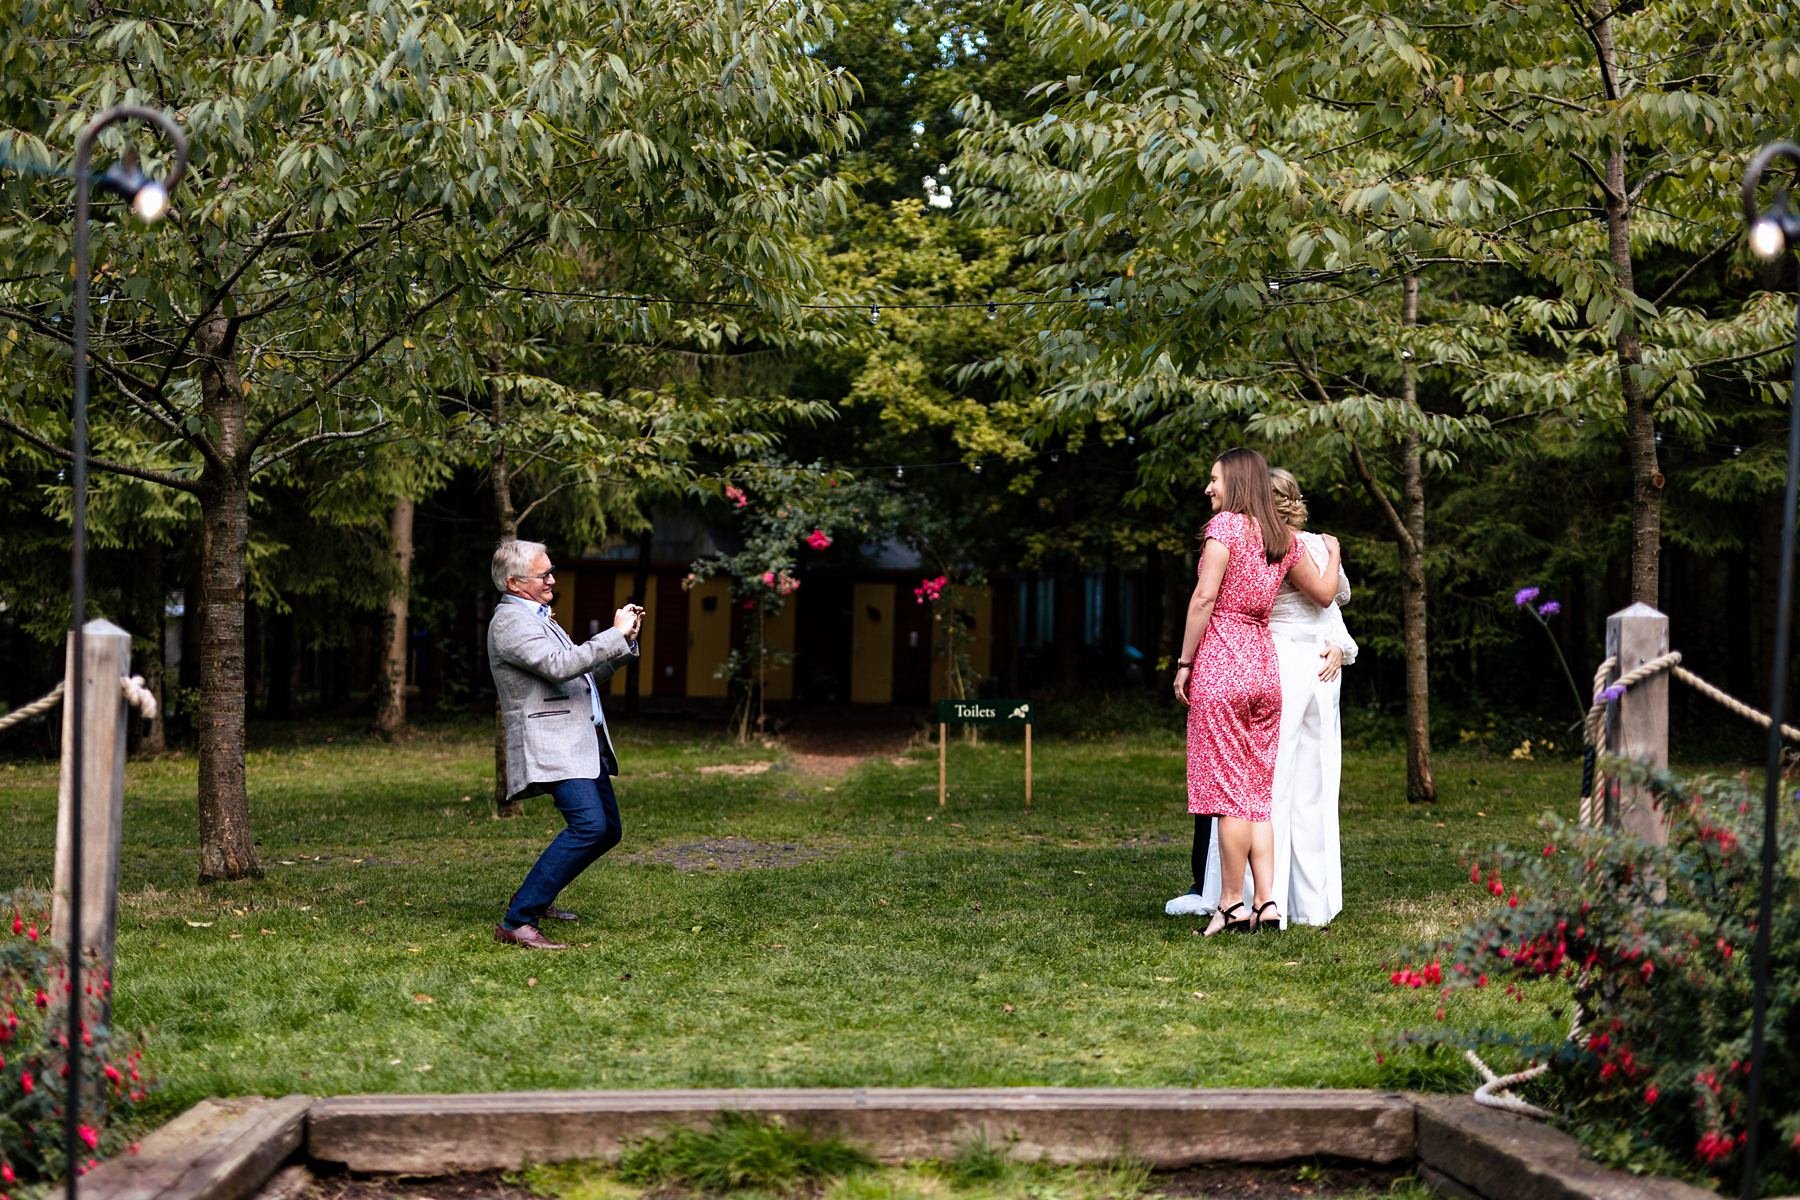 evenley-wood-garden-wedding-in-the-woods_0047.jpg